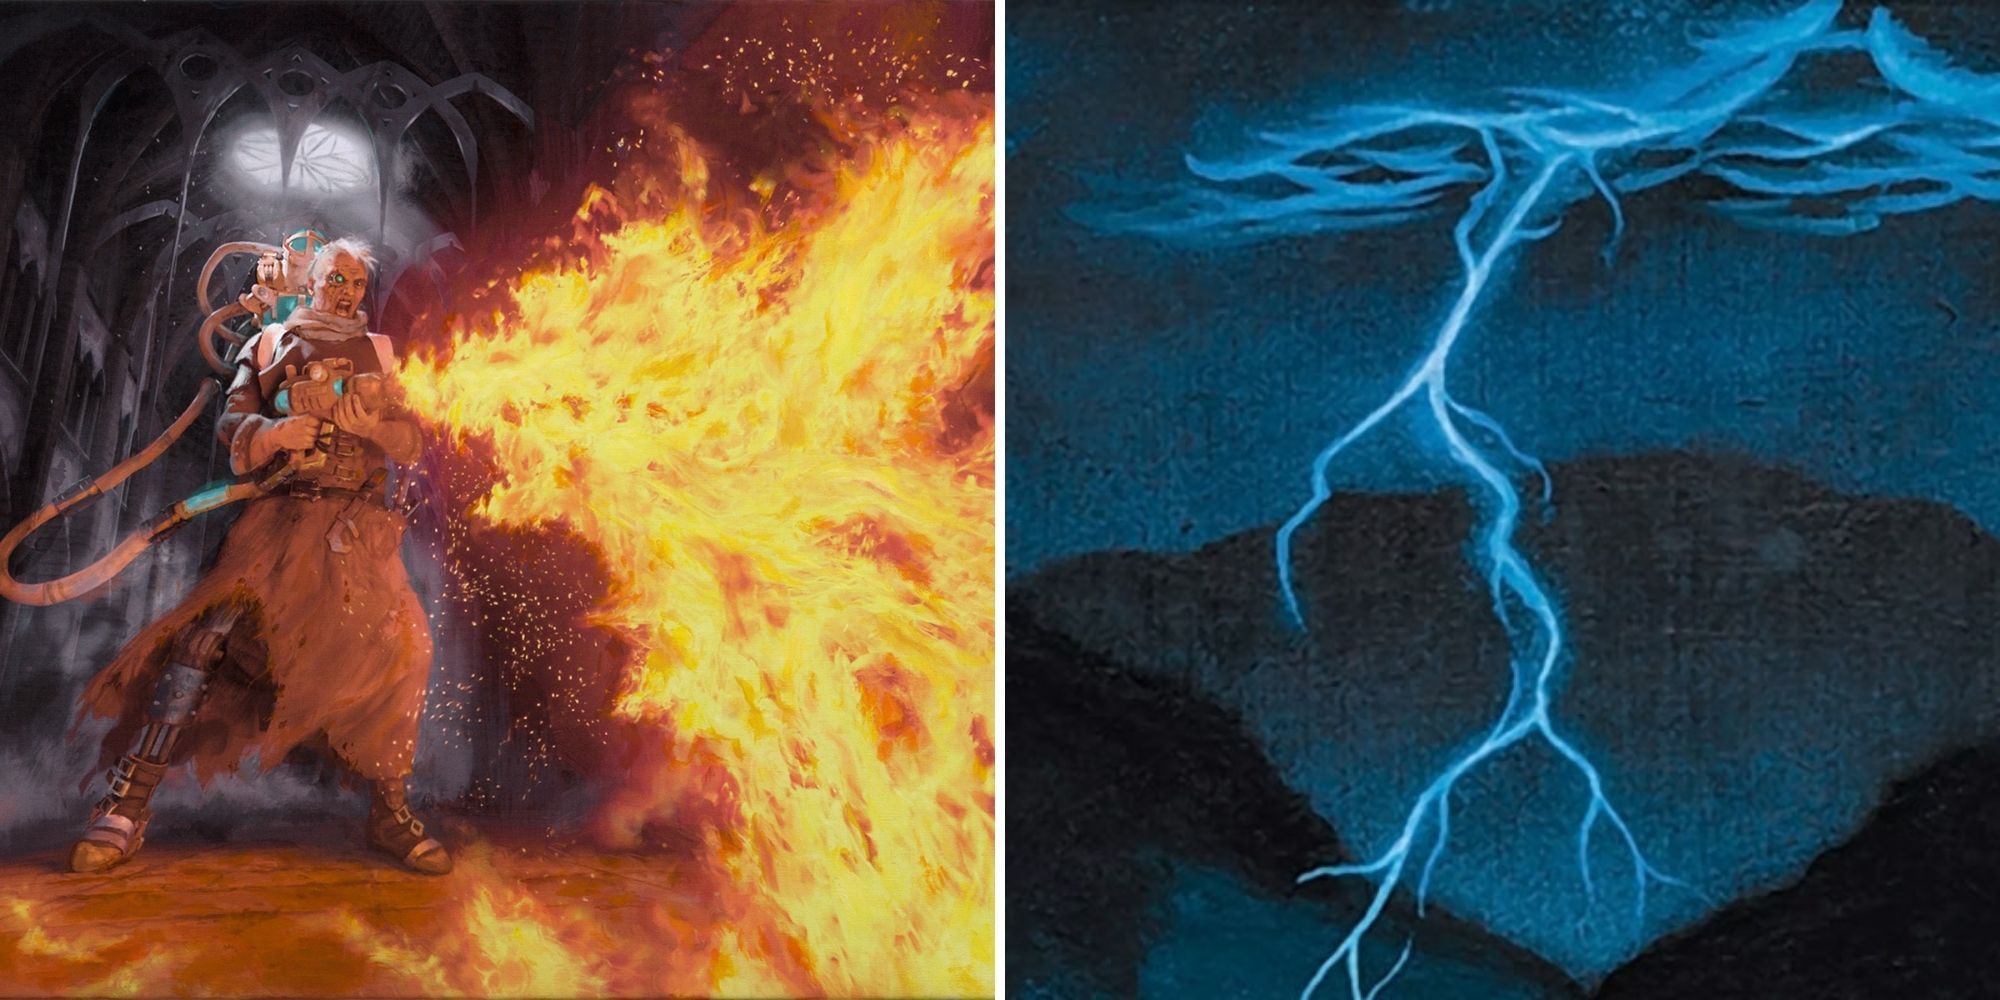 alchemist fires flamethrower against lightning strike